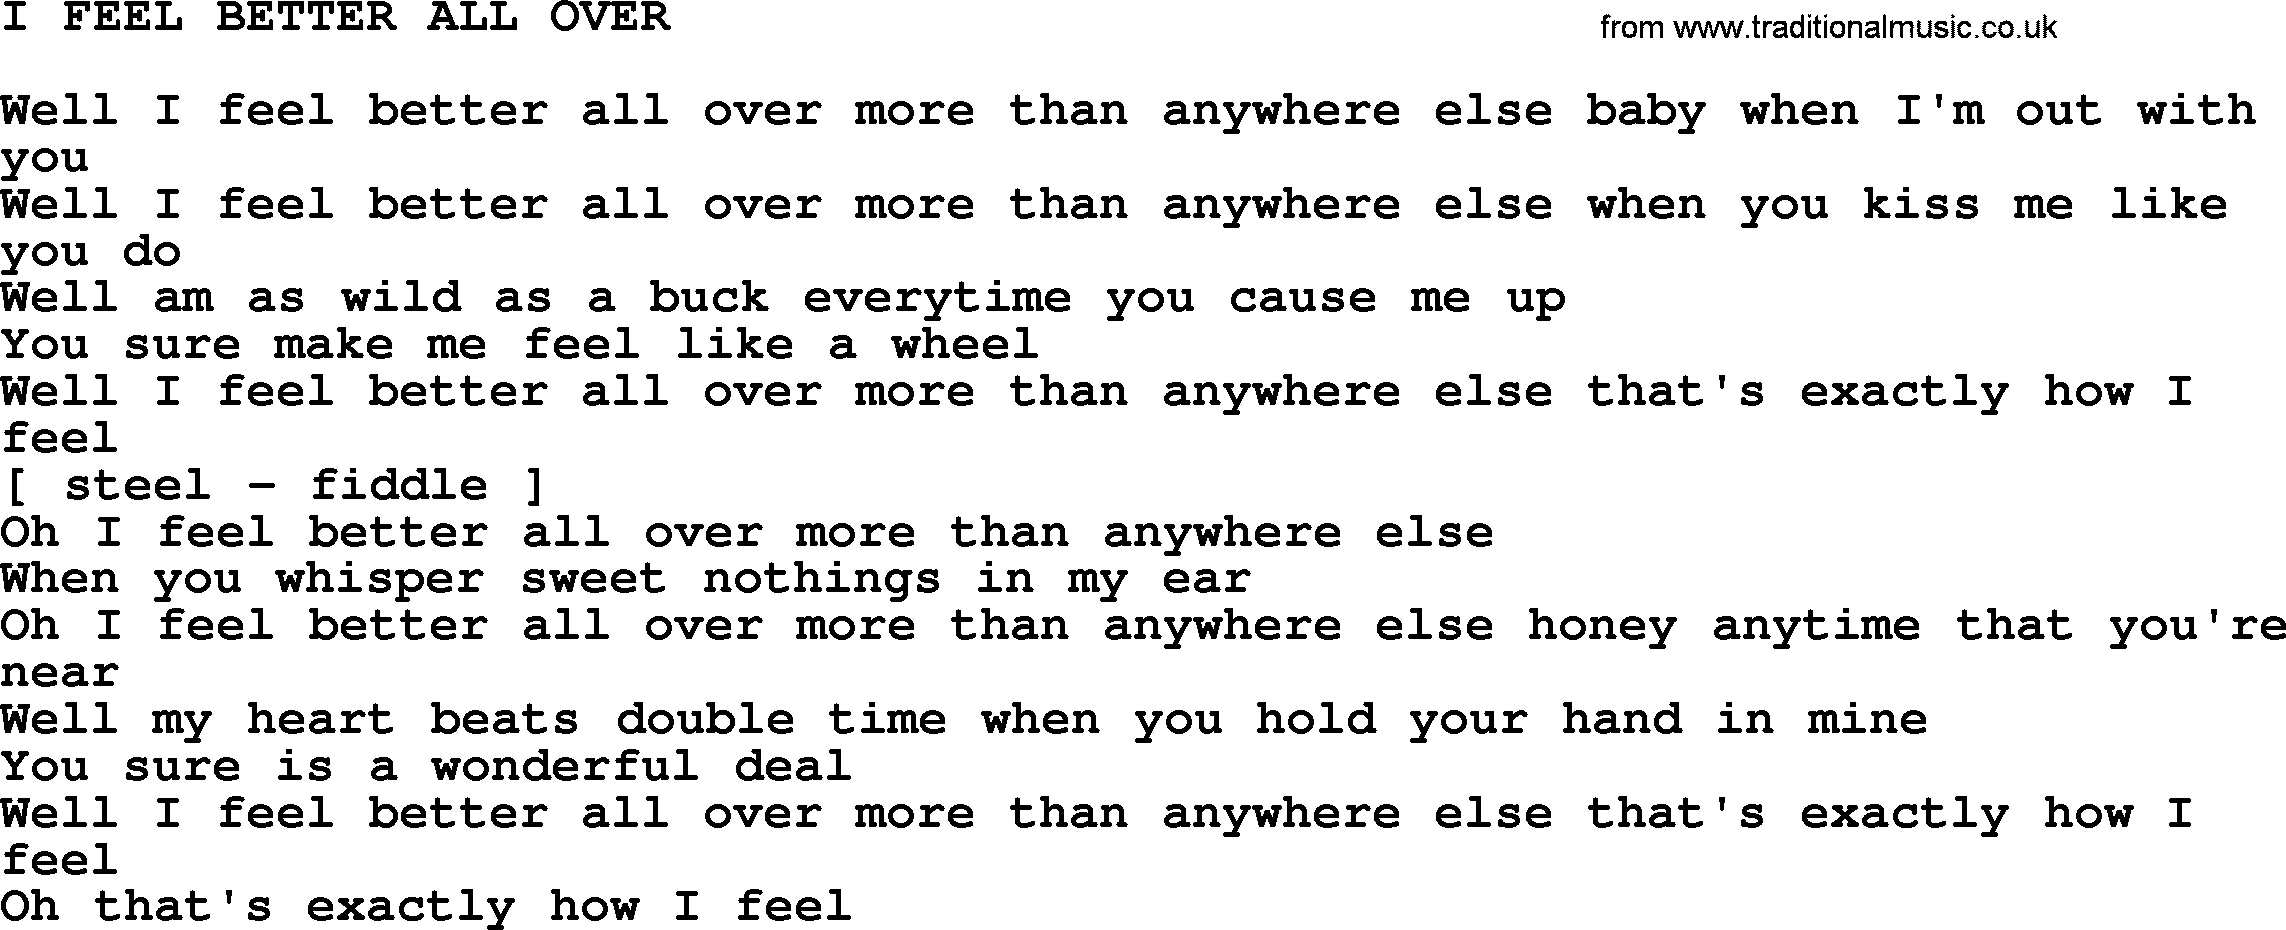 Johnny Cash song I Feel Better All Over.txt lyrics